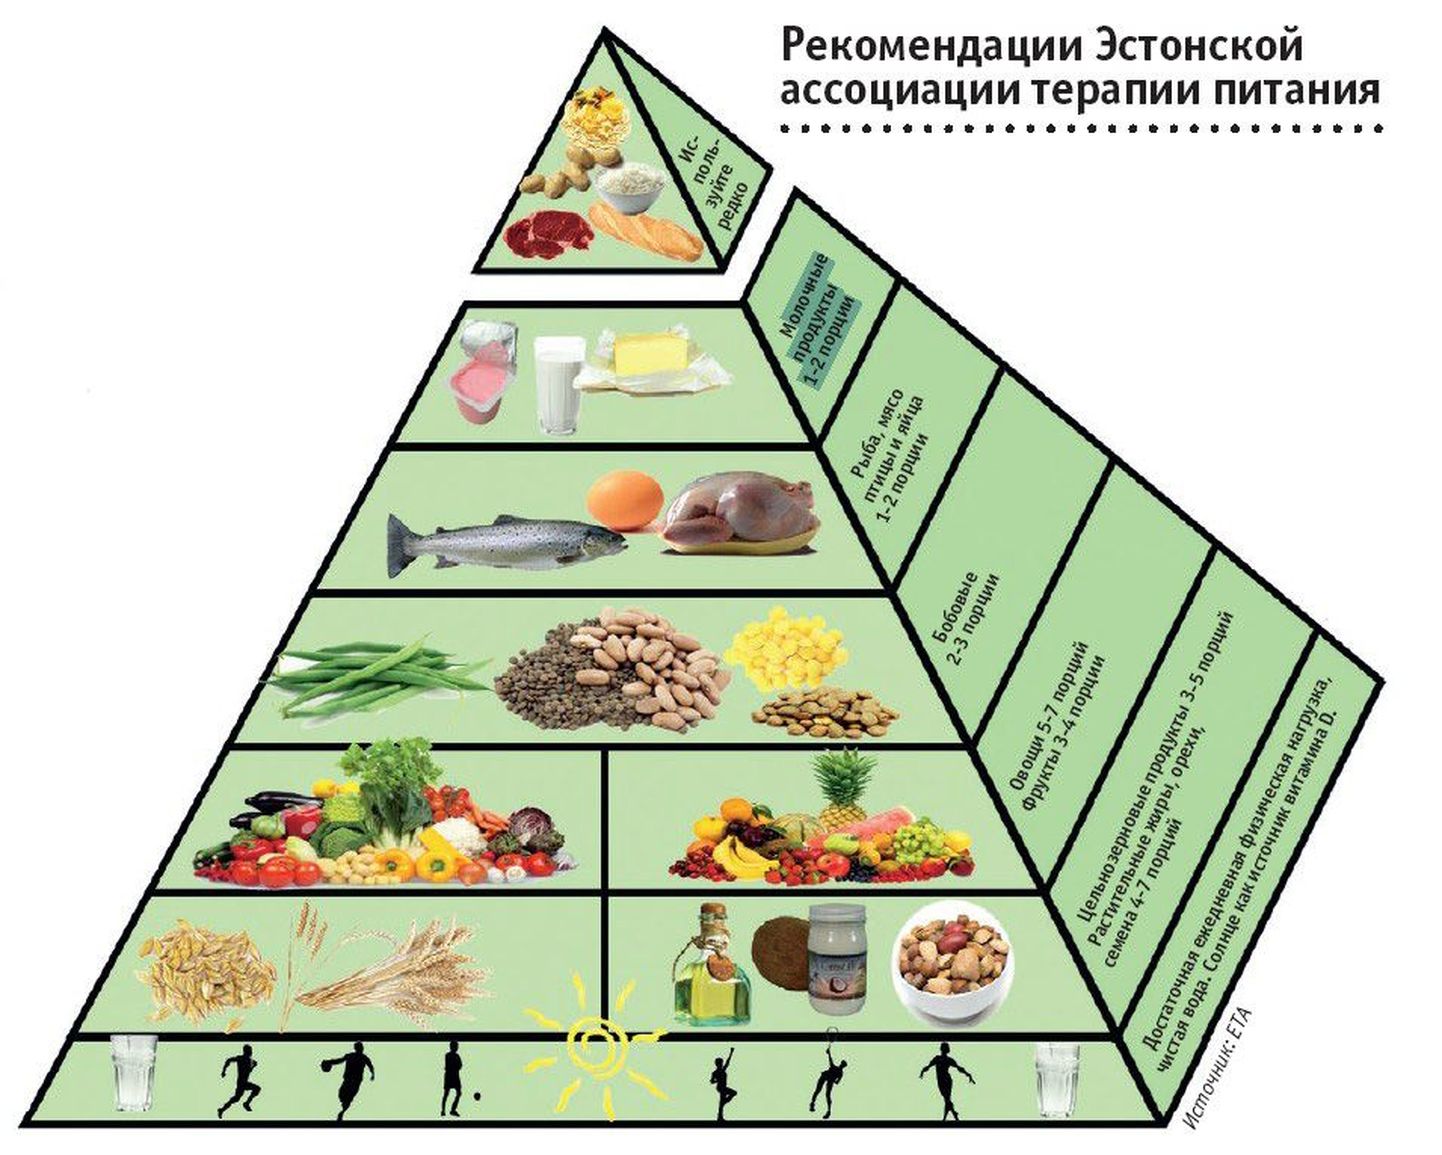 Красное мясо, картофель, белый рис, рафинированные продукты. Пищевая пирамида. Снимок иллюстративный.